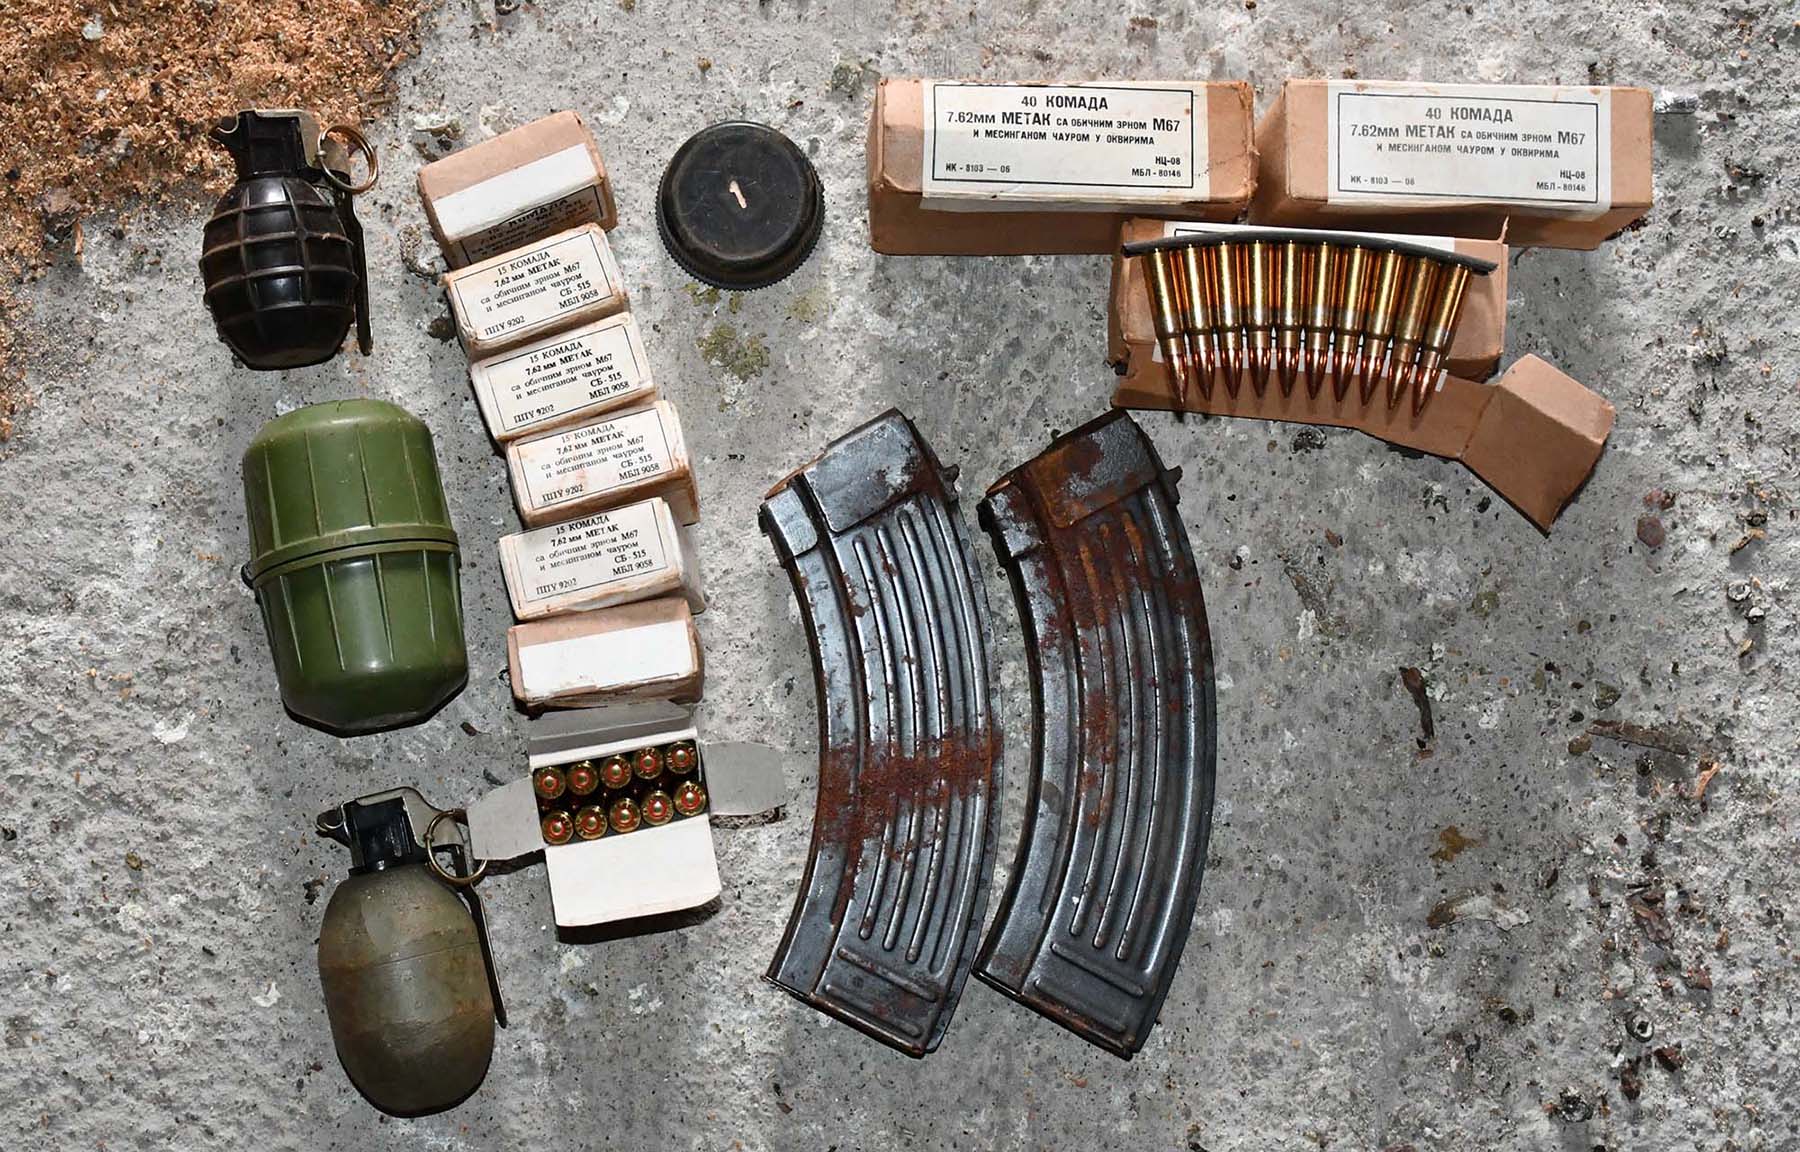 U kući osumnjičenog policija pronašla bombe, oružje i municiju